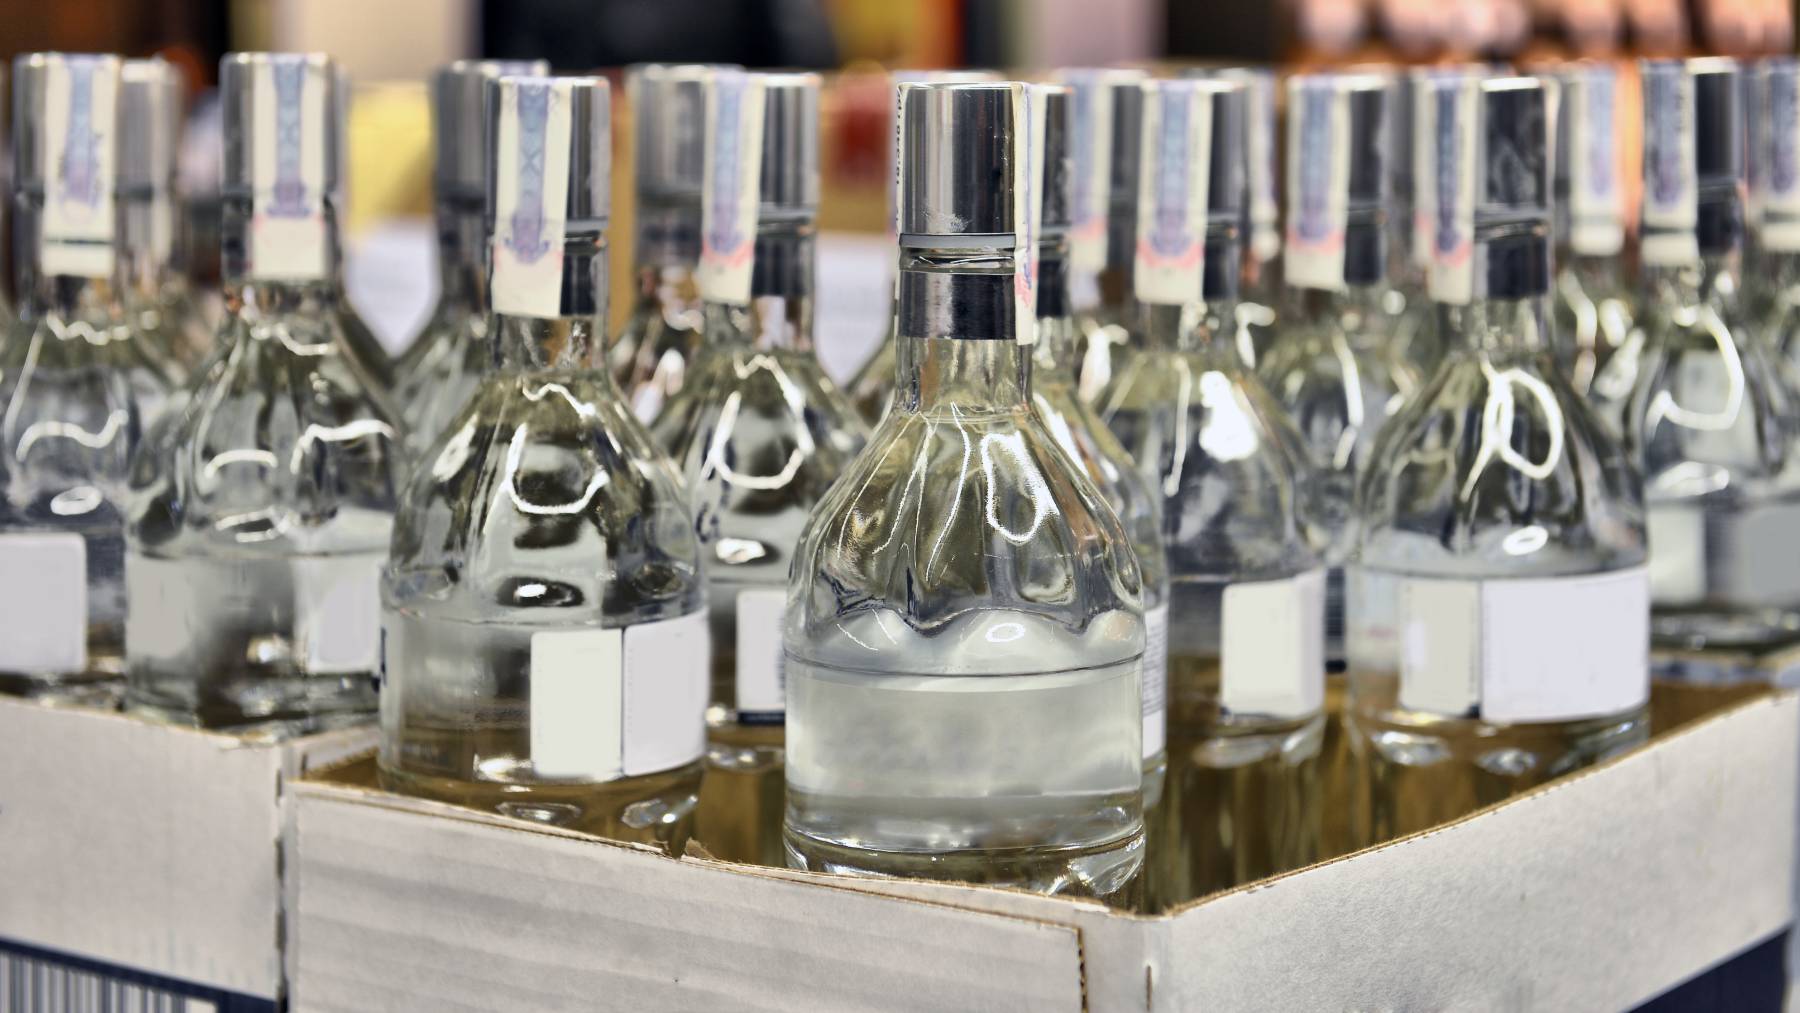 Caja de botellas de vodka ruso.